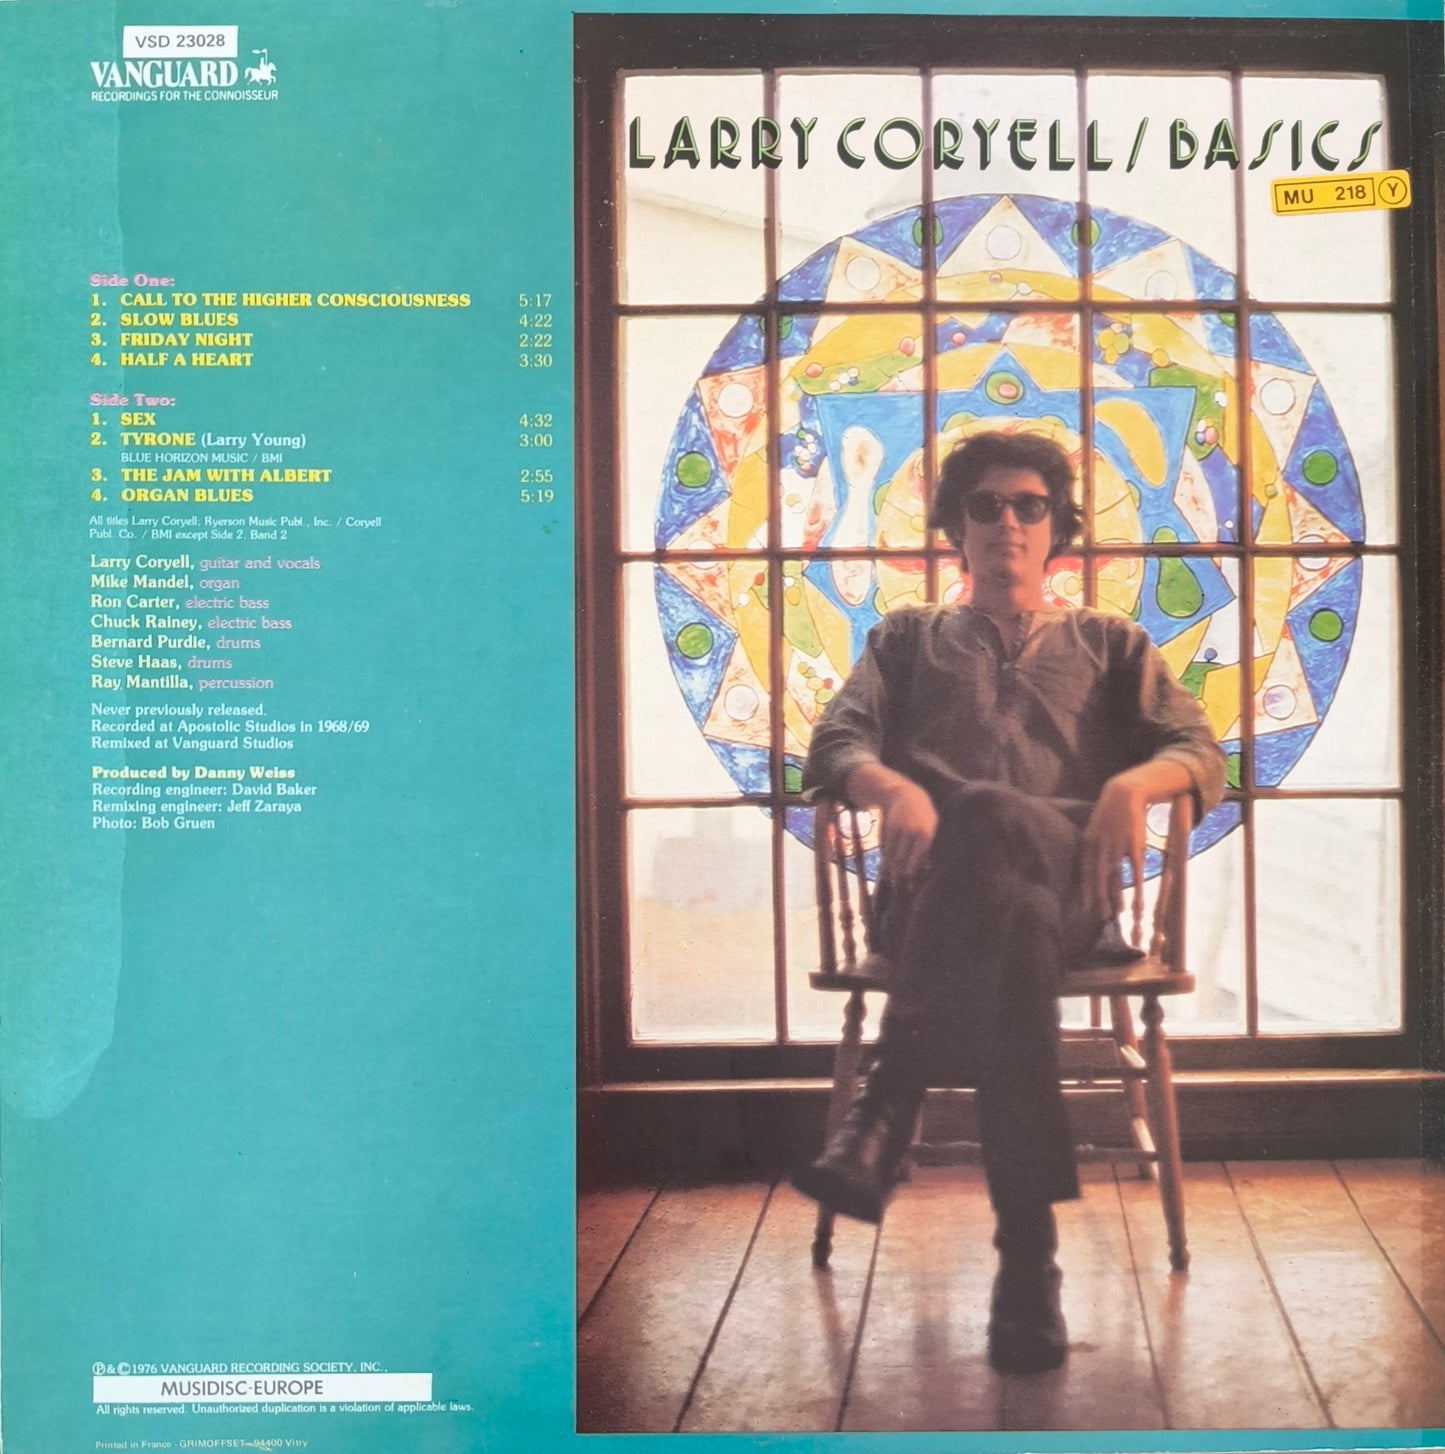 LARRY CORYELL - Basics